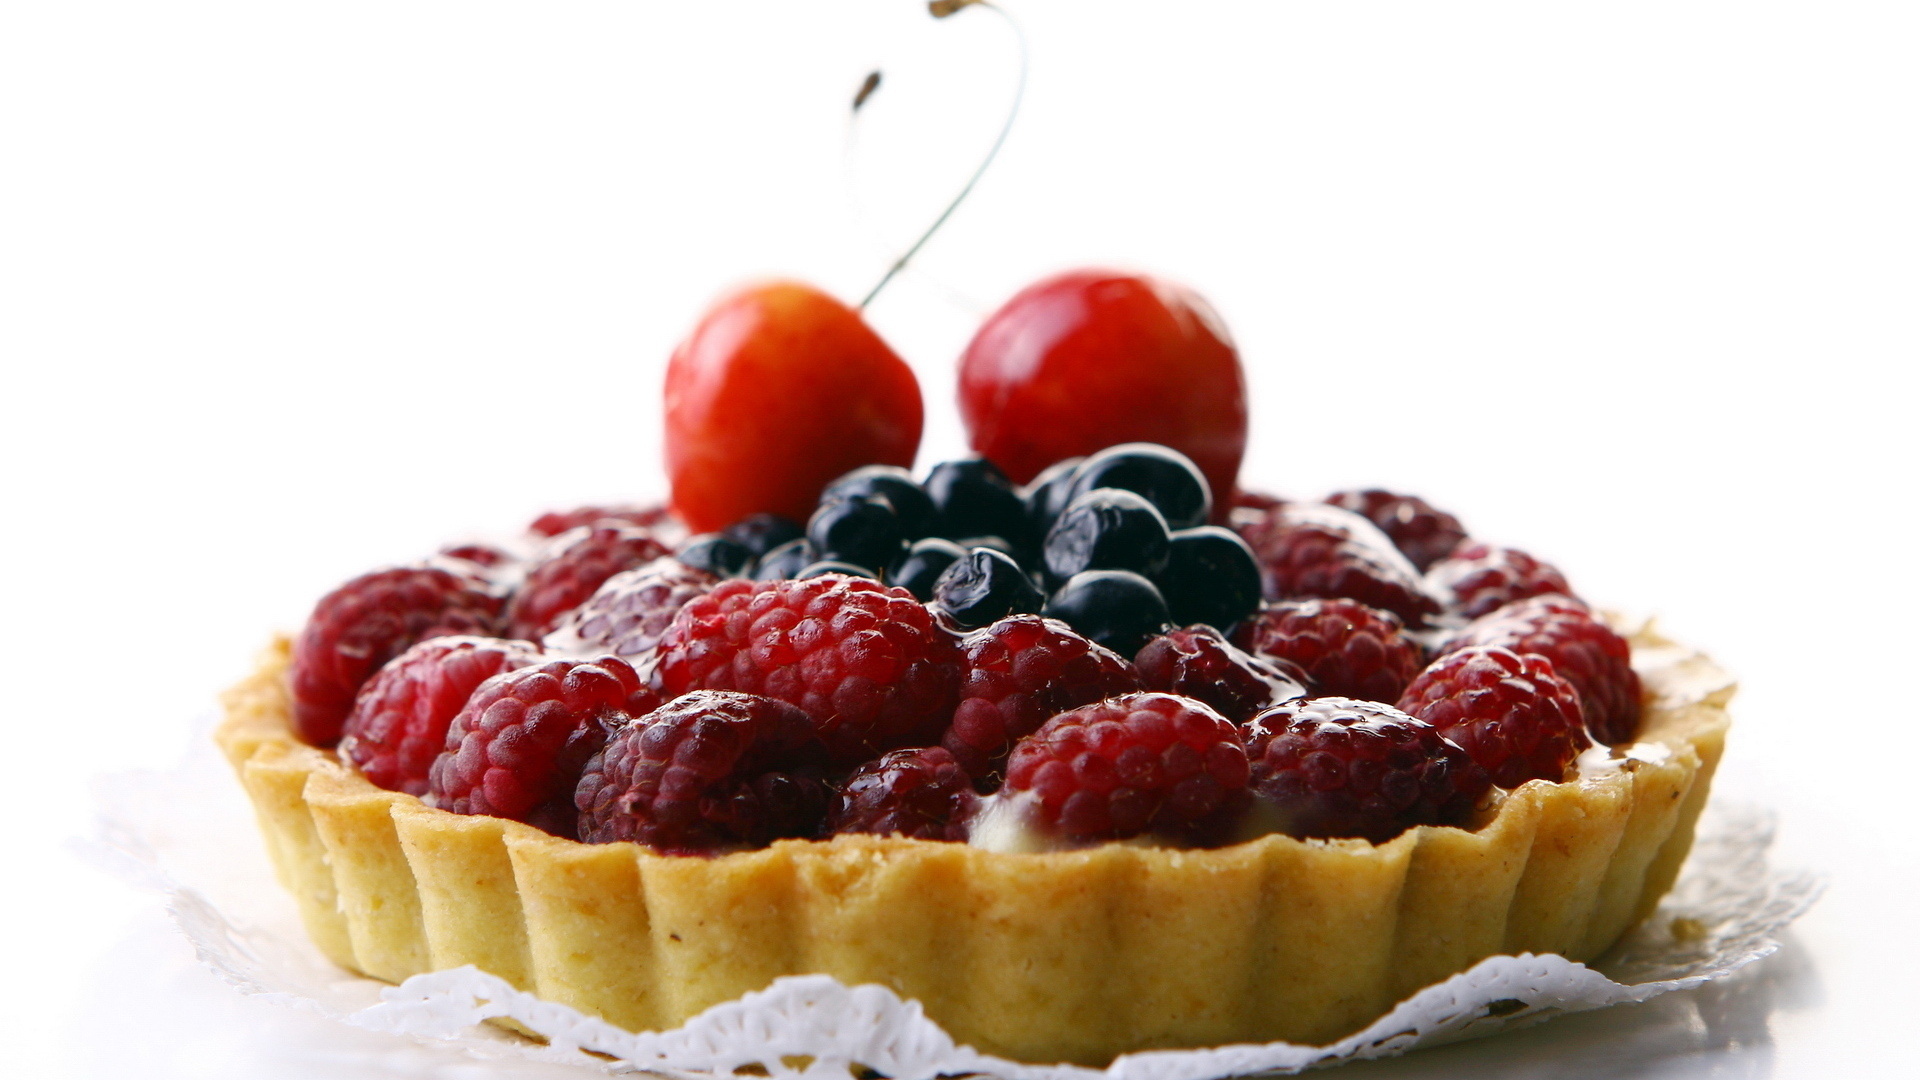 3d обои Десерт - сладкий пирог с ягодами малины, черники, вишни, под ними крем  1920х1080 # 9034